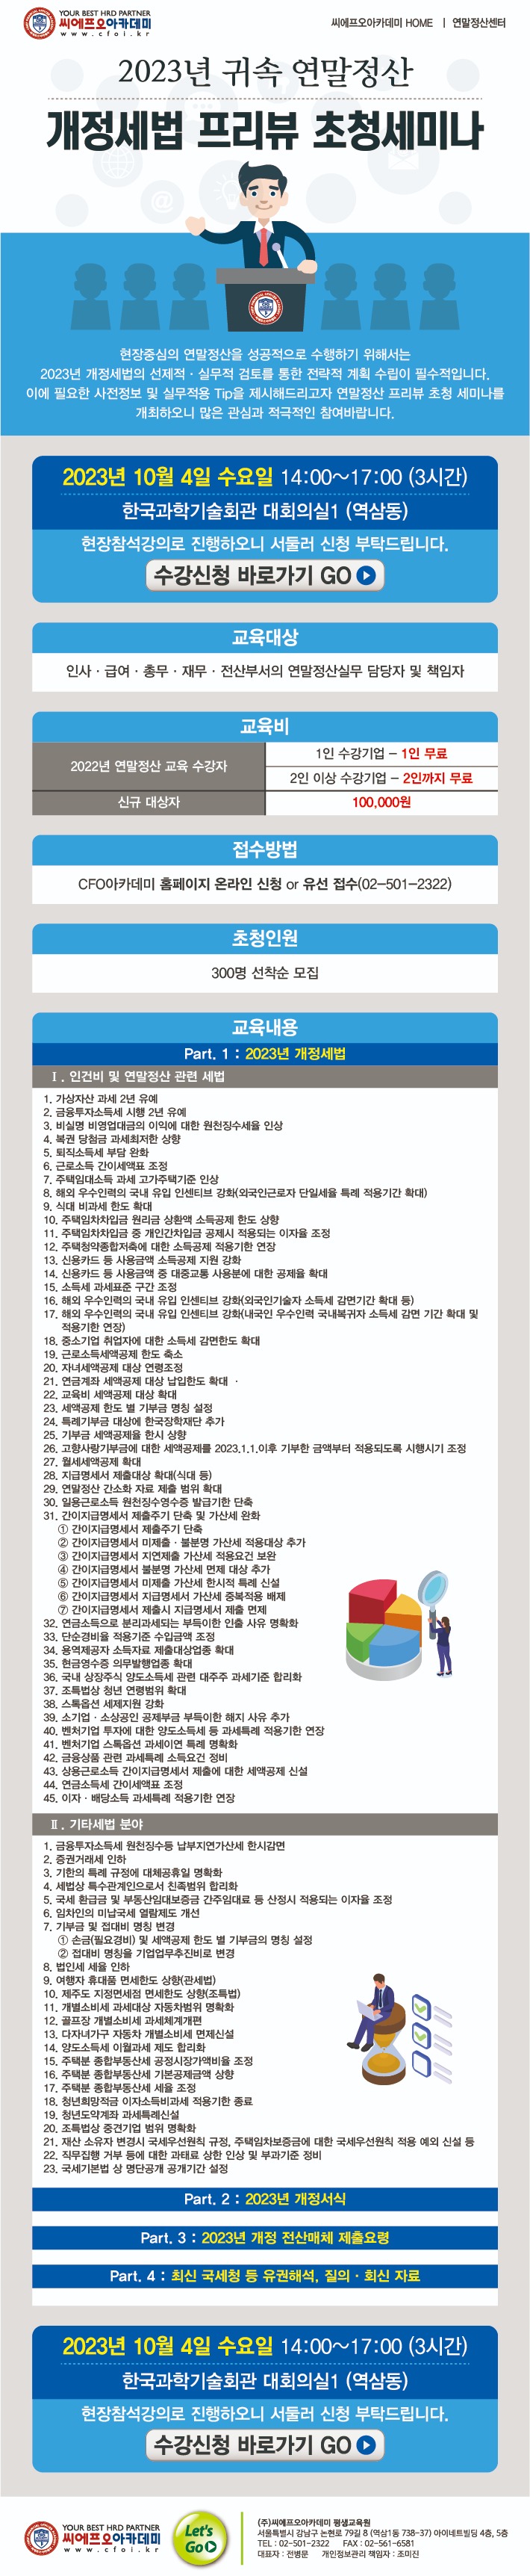 2023연말정산프리뷰_메일링.jpg